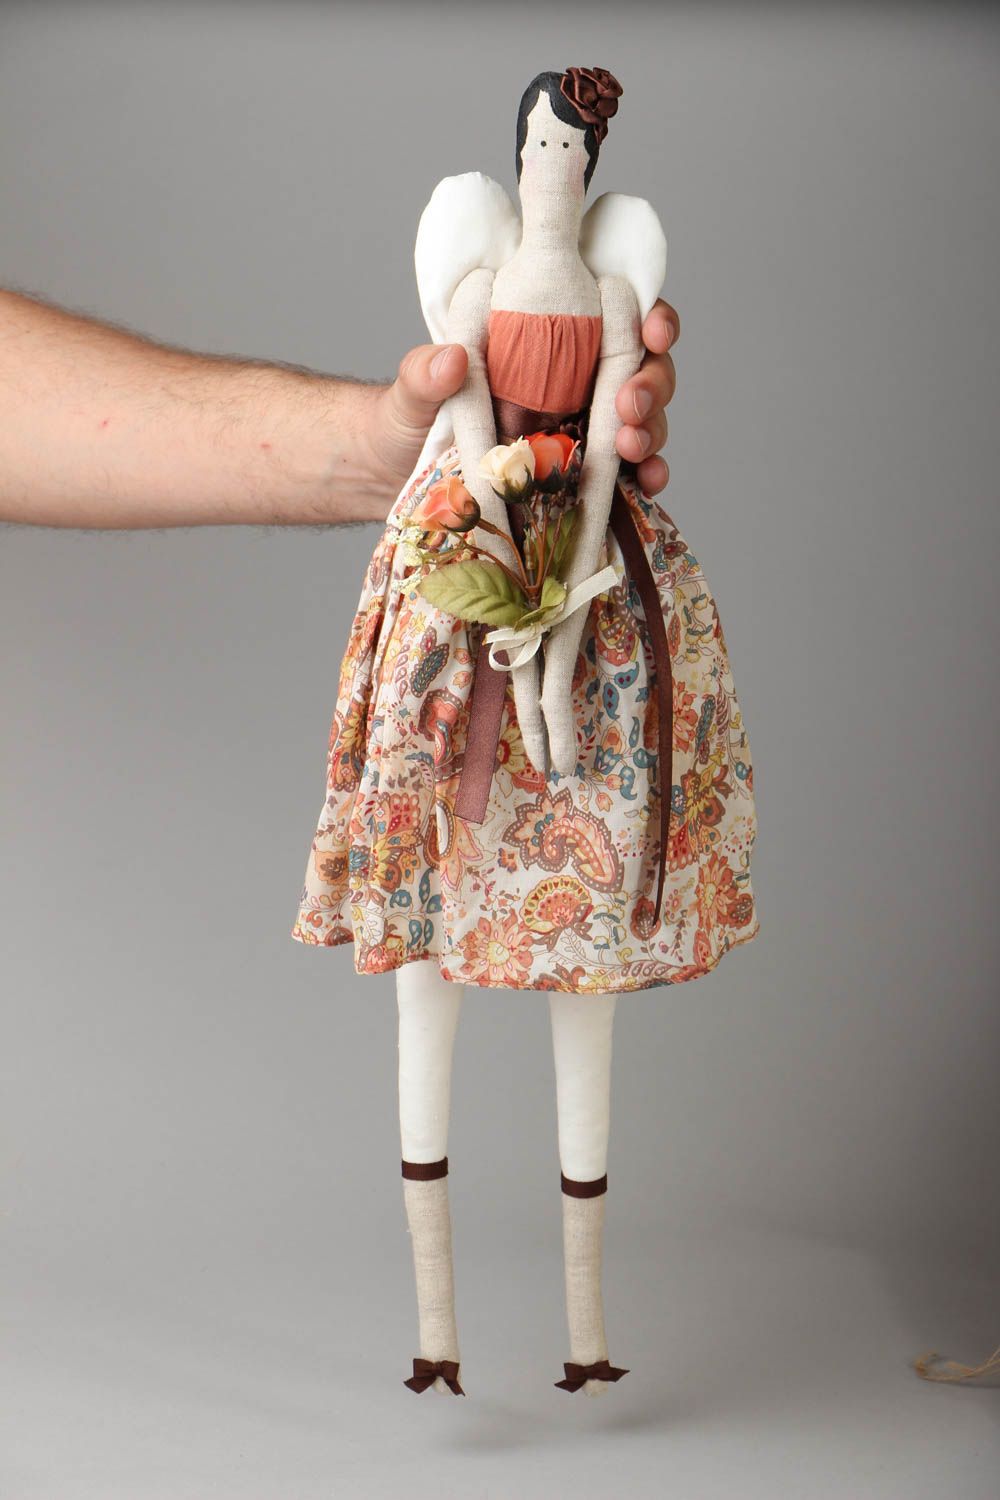 Винтажная кукла из хлопка и льна фото 4